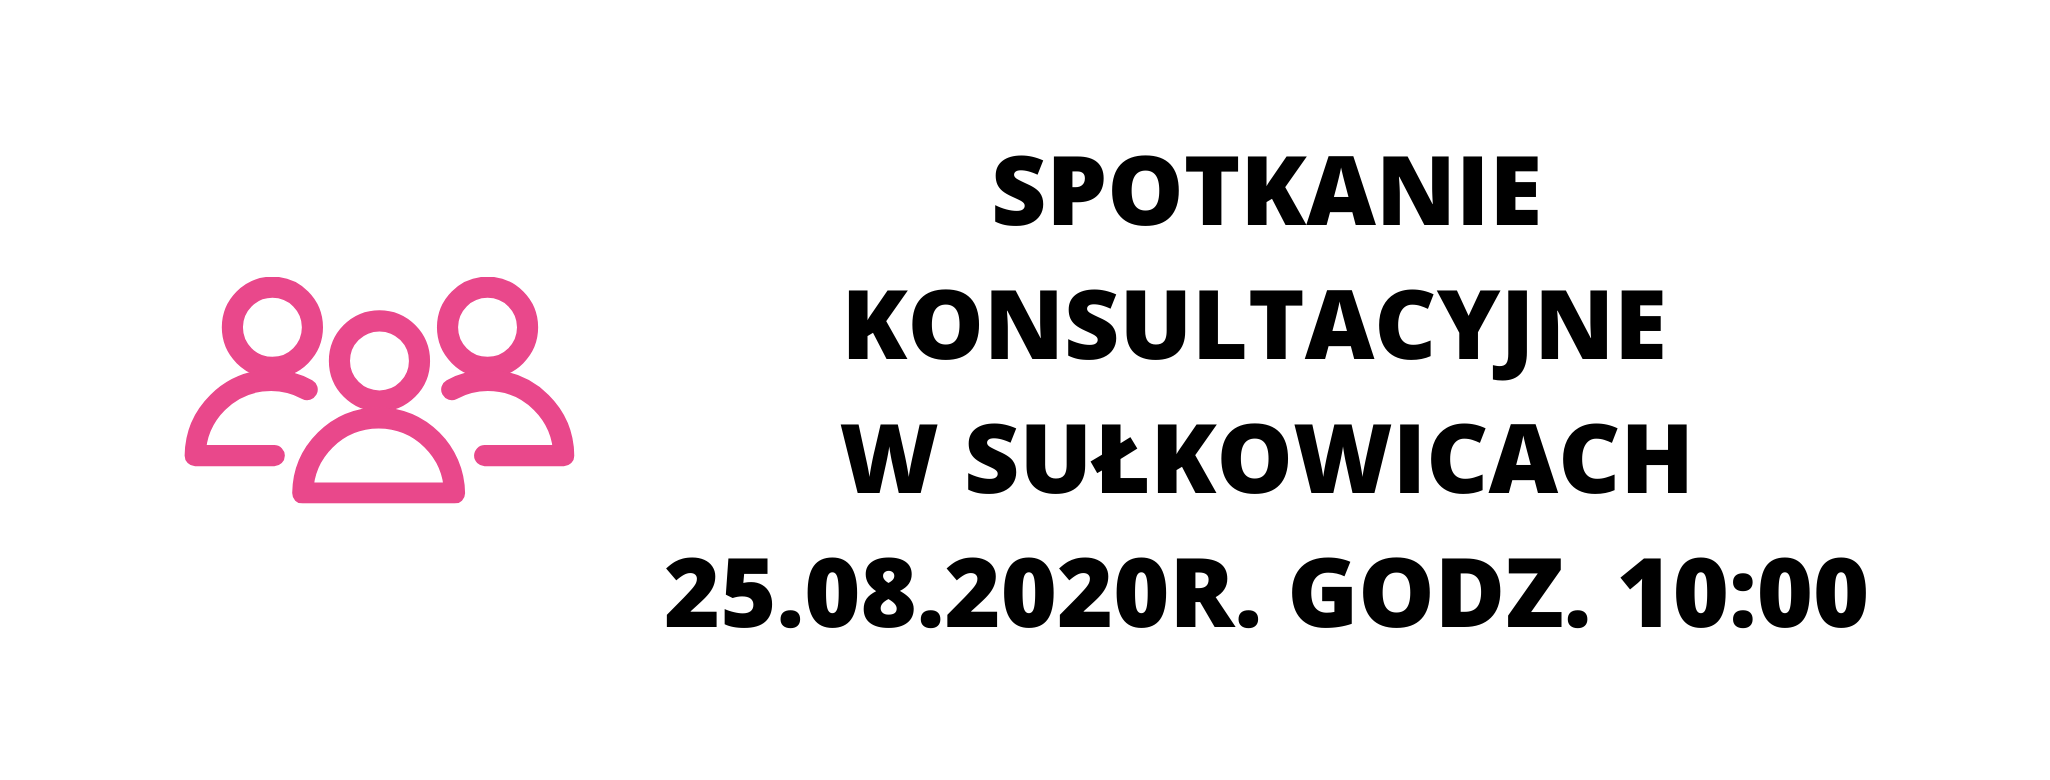 Spotkanie konsultacyjne w Sułkowicach- 25.08.2020r. godz. 10:00